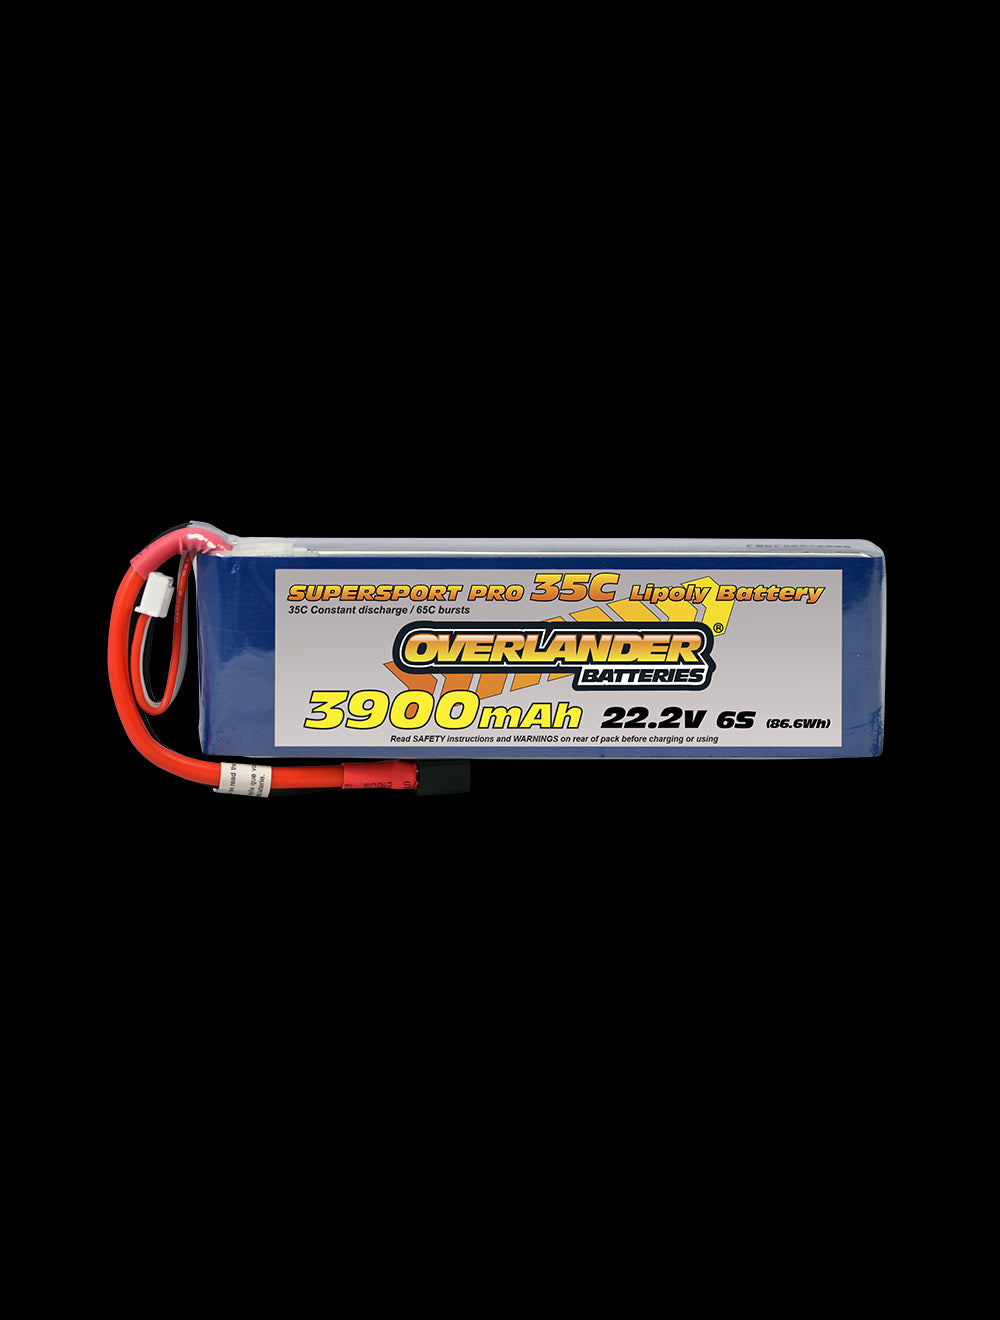 Overlander 3900mAh 22.2V 6S 35C Supersport Pro LiPo Battery - EC5 Connector 2473